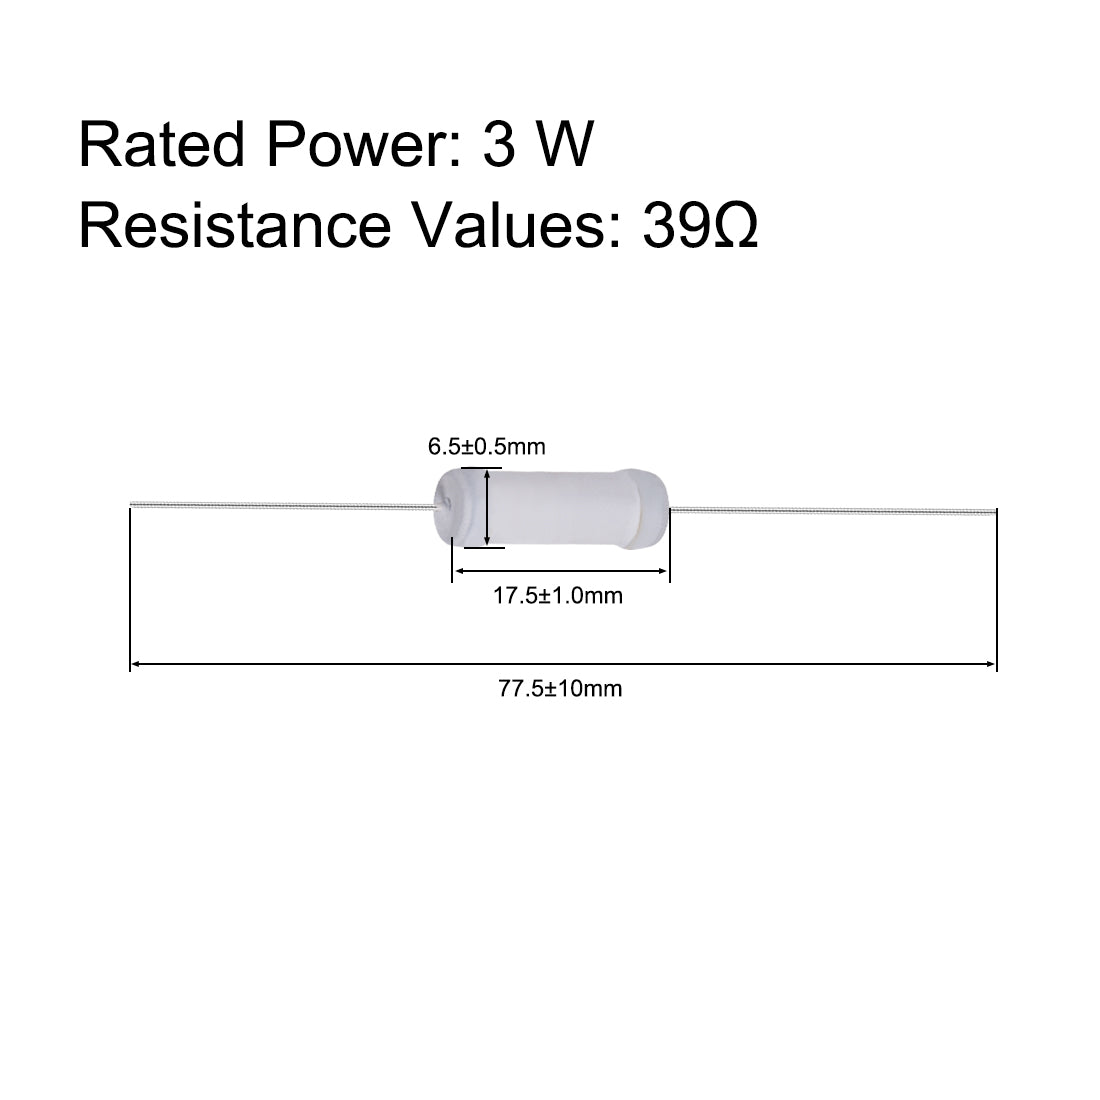 uxcell Uxcell 40pcs 3W 3 Watt Metal Oxide Film Resistor Lead 39 Ohm ±5% Tolerance